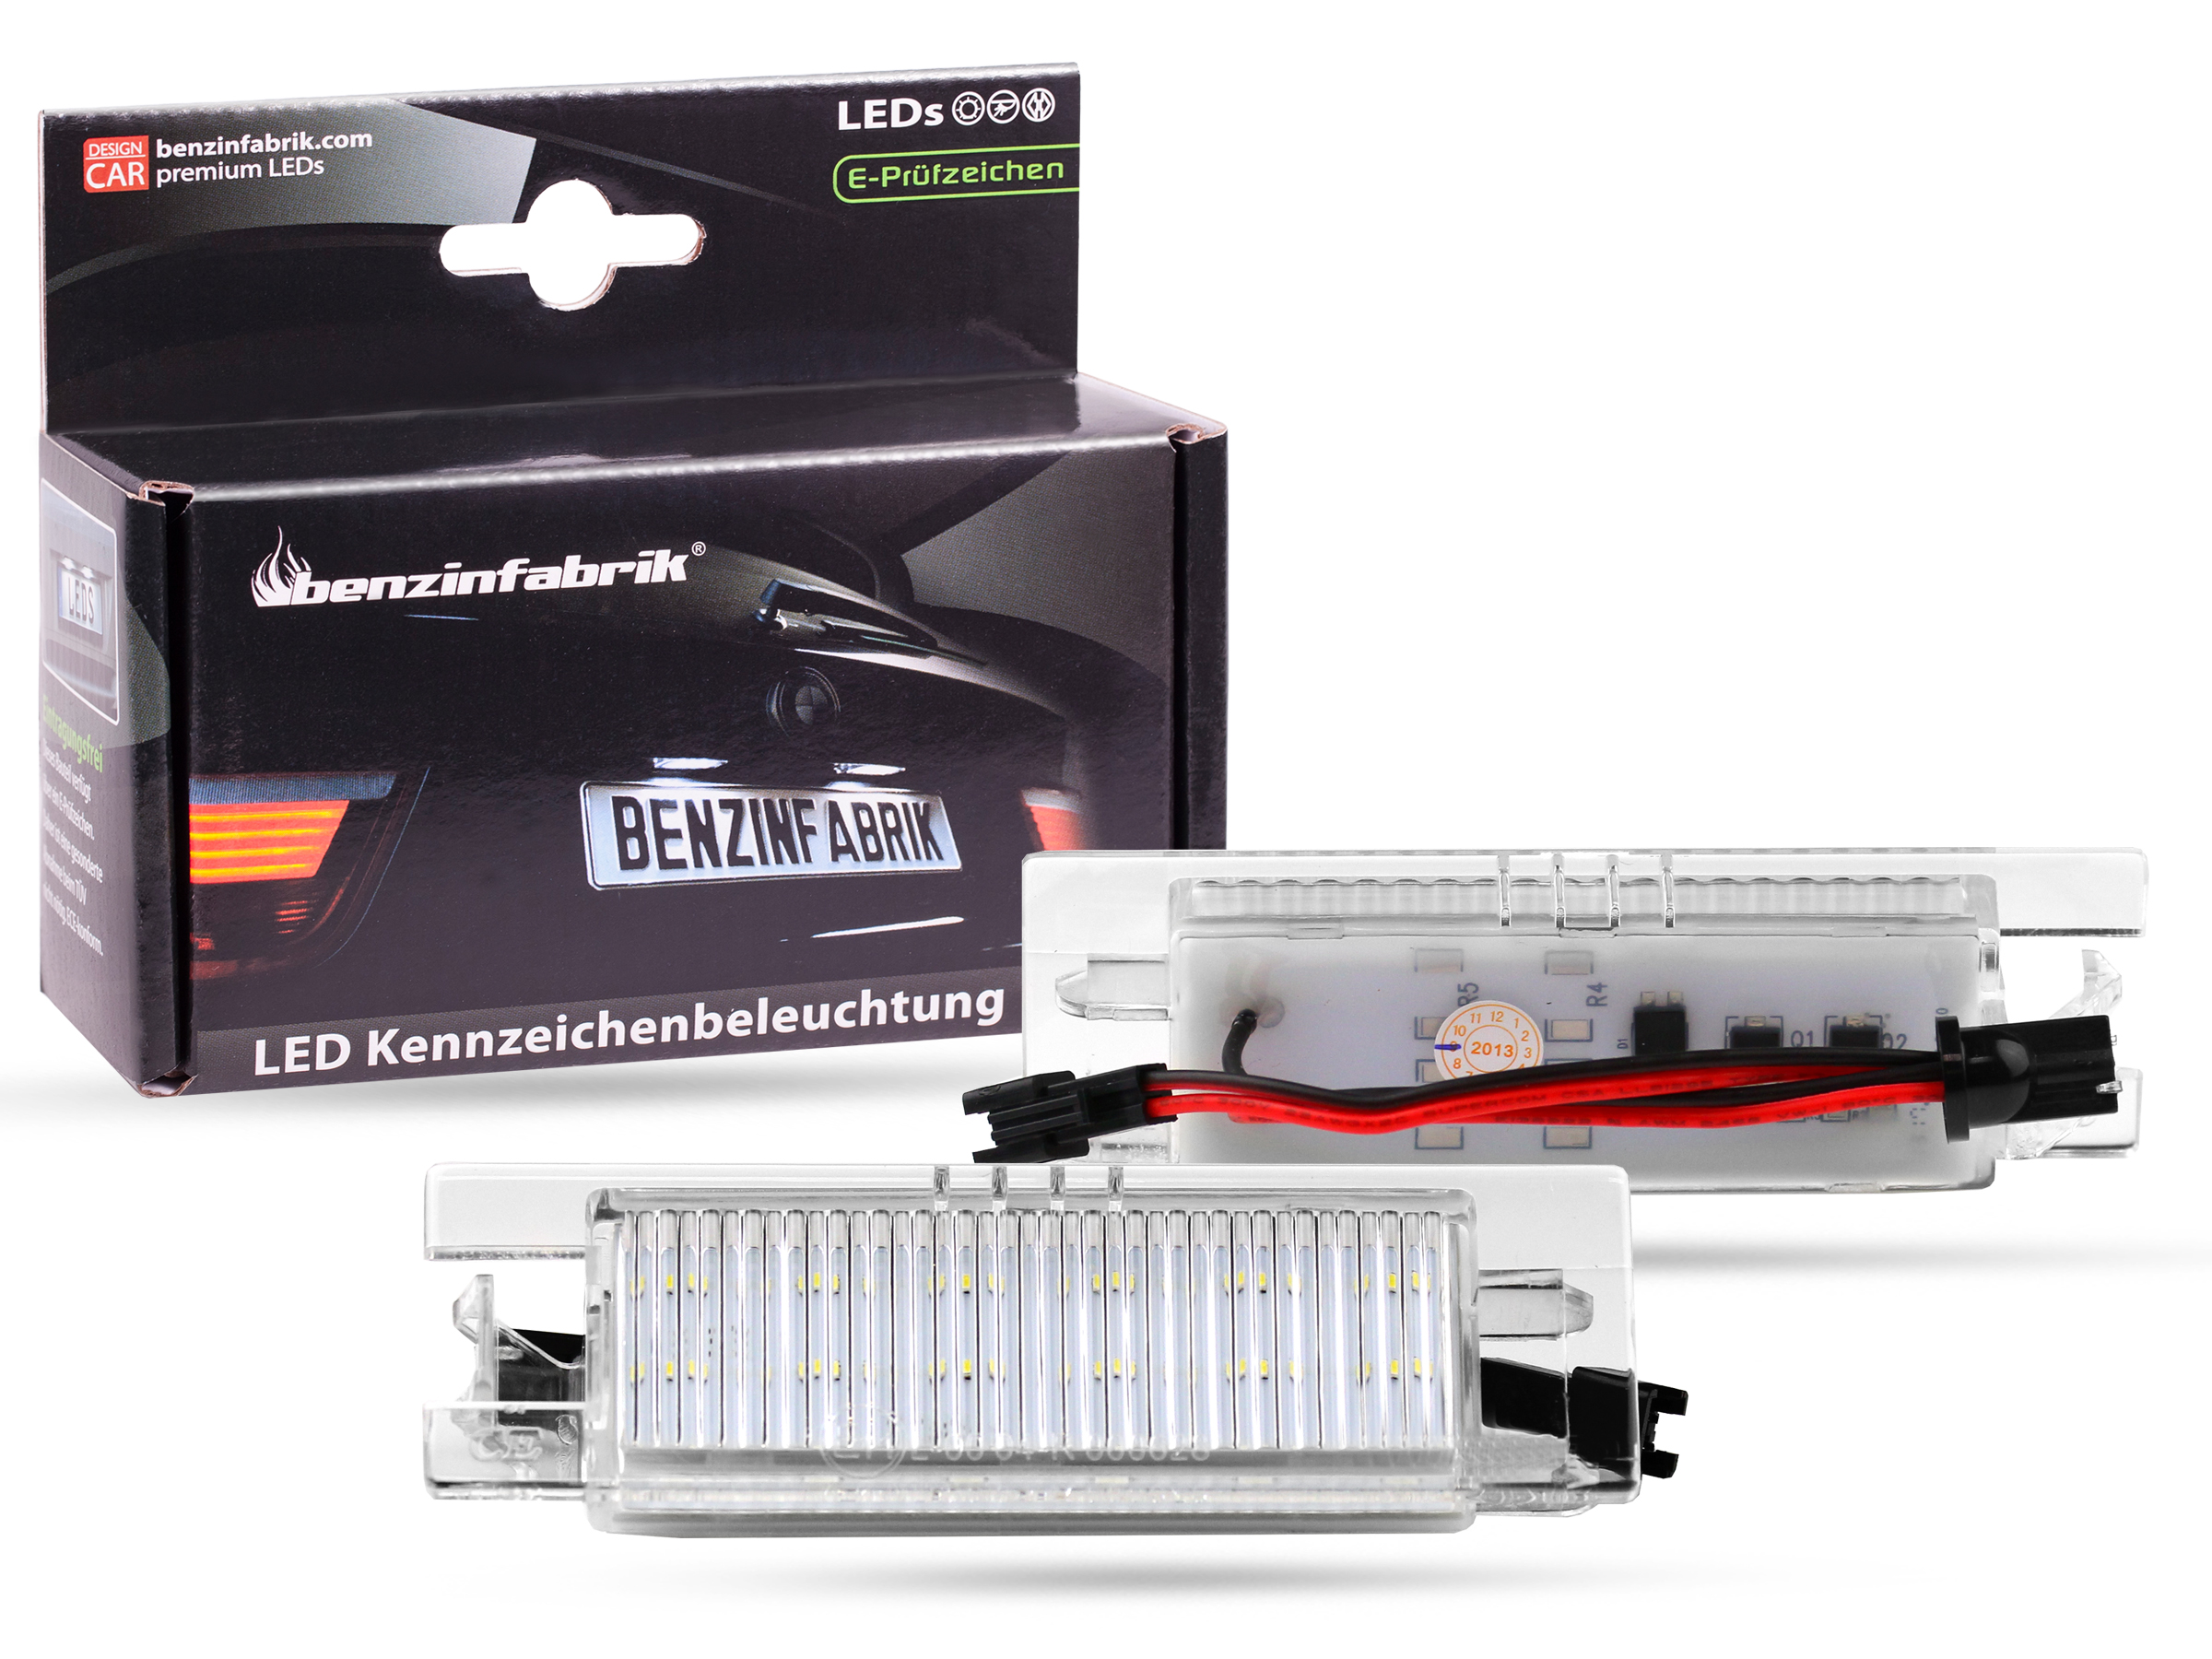 24 SMD LED Kennzeichenbeleuchtung Kennzeichenleuchten Opel E-Prüfzeichen 